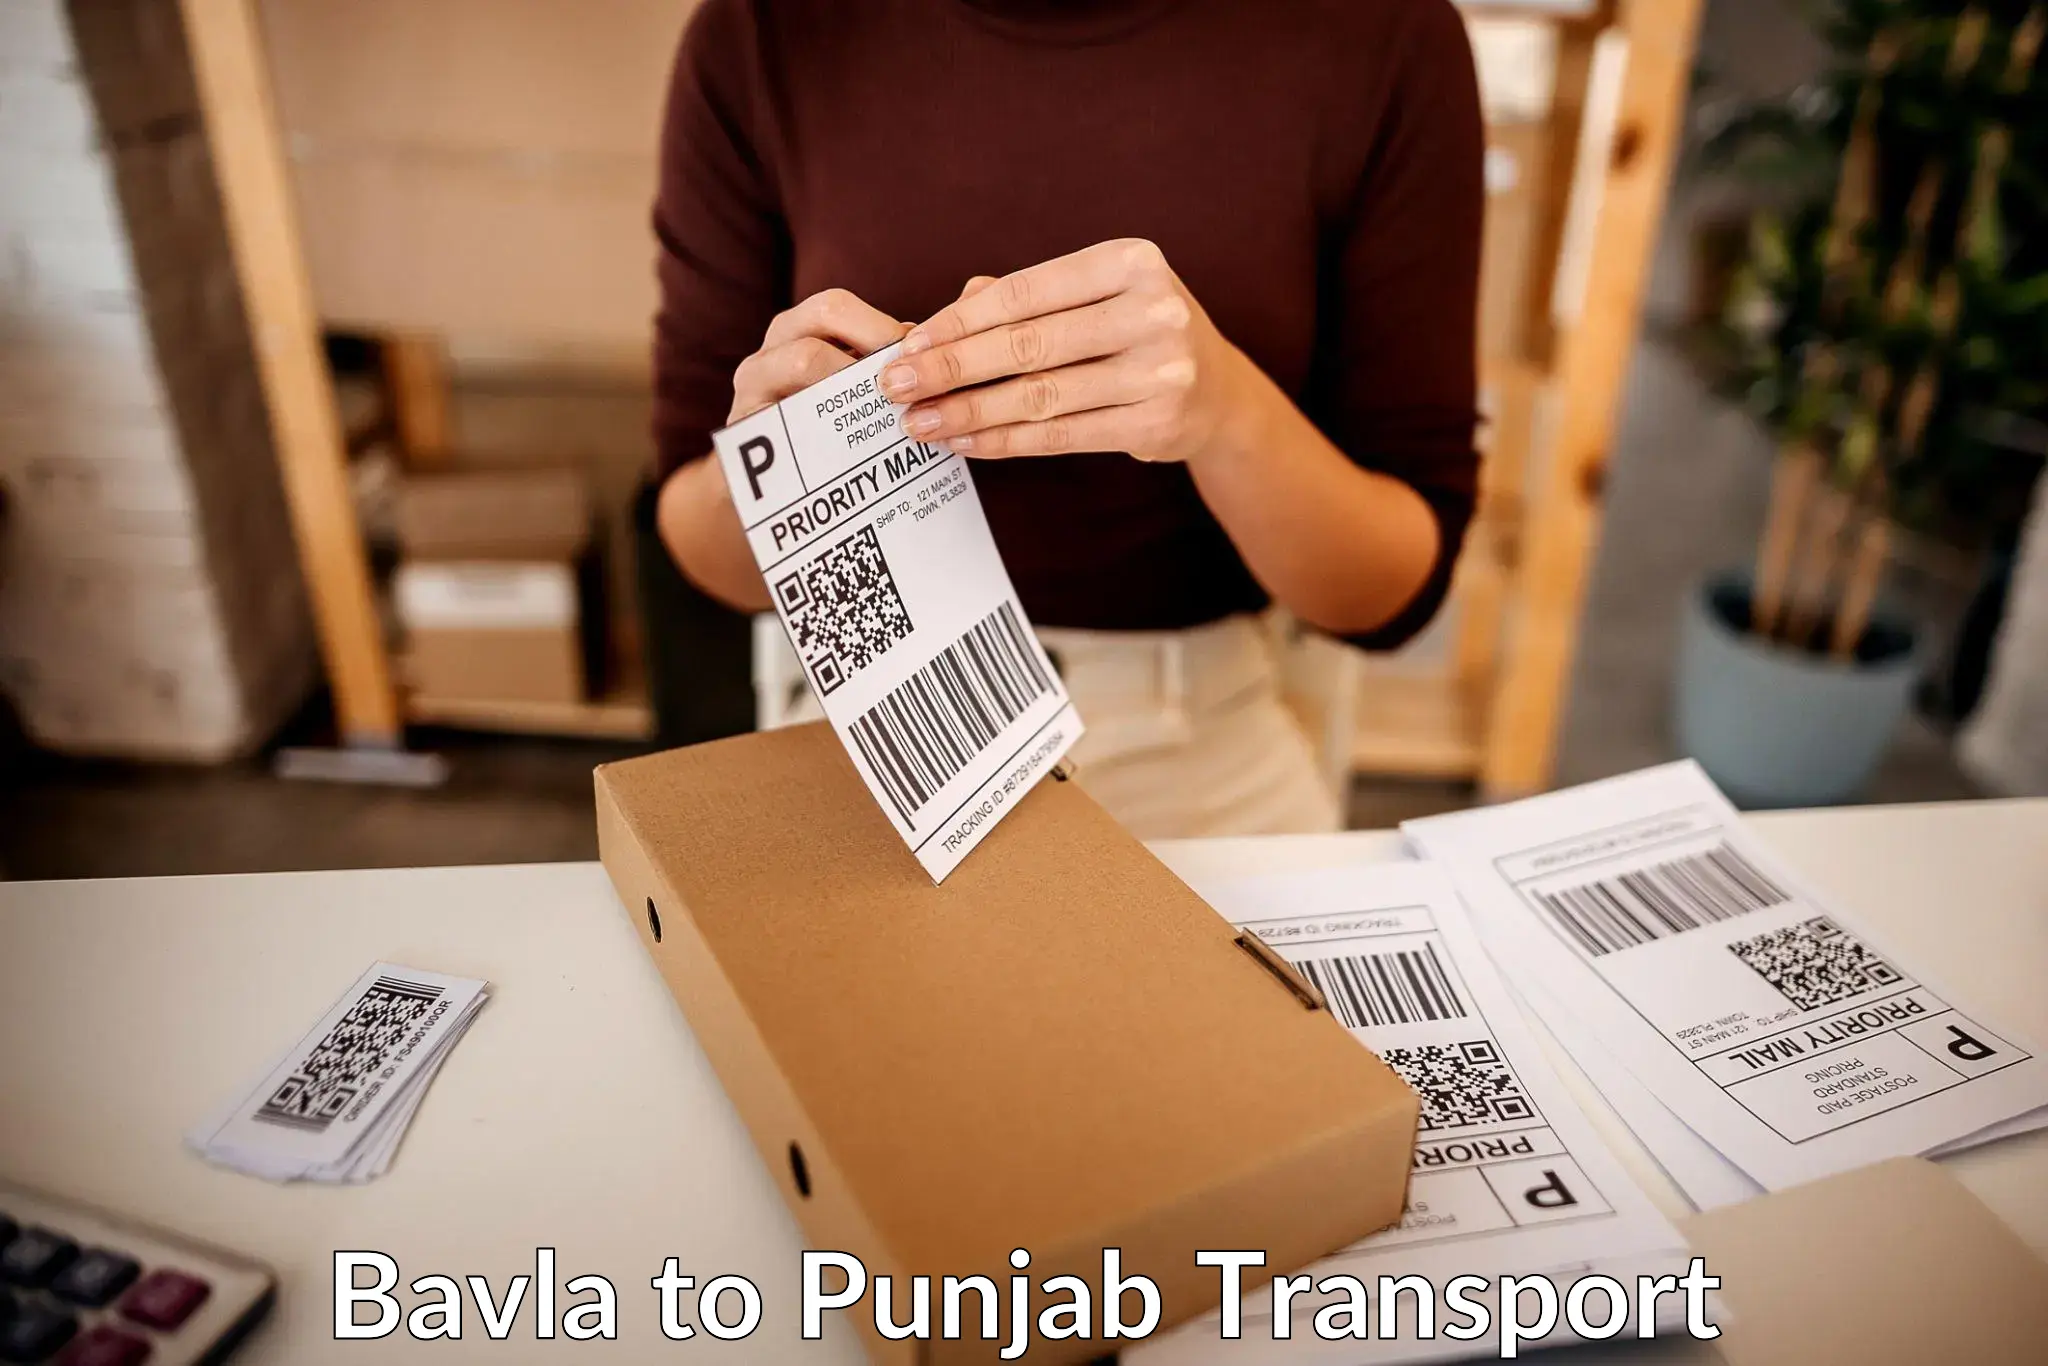 Logistics transportation services Bavla to Rupnagar